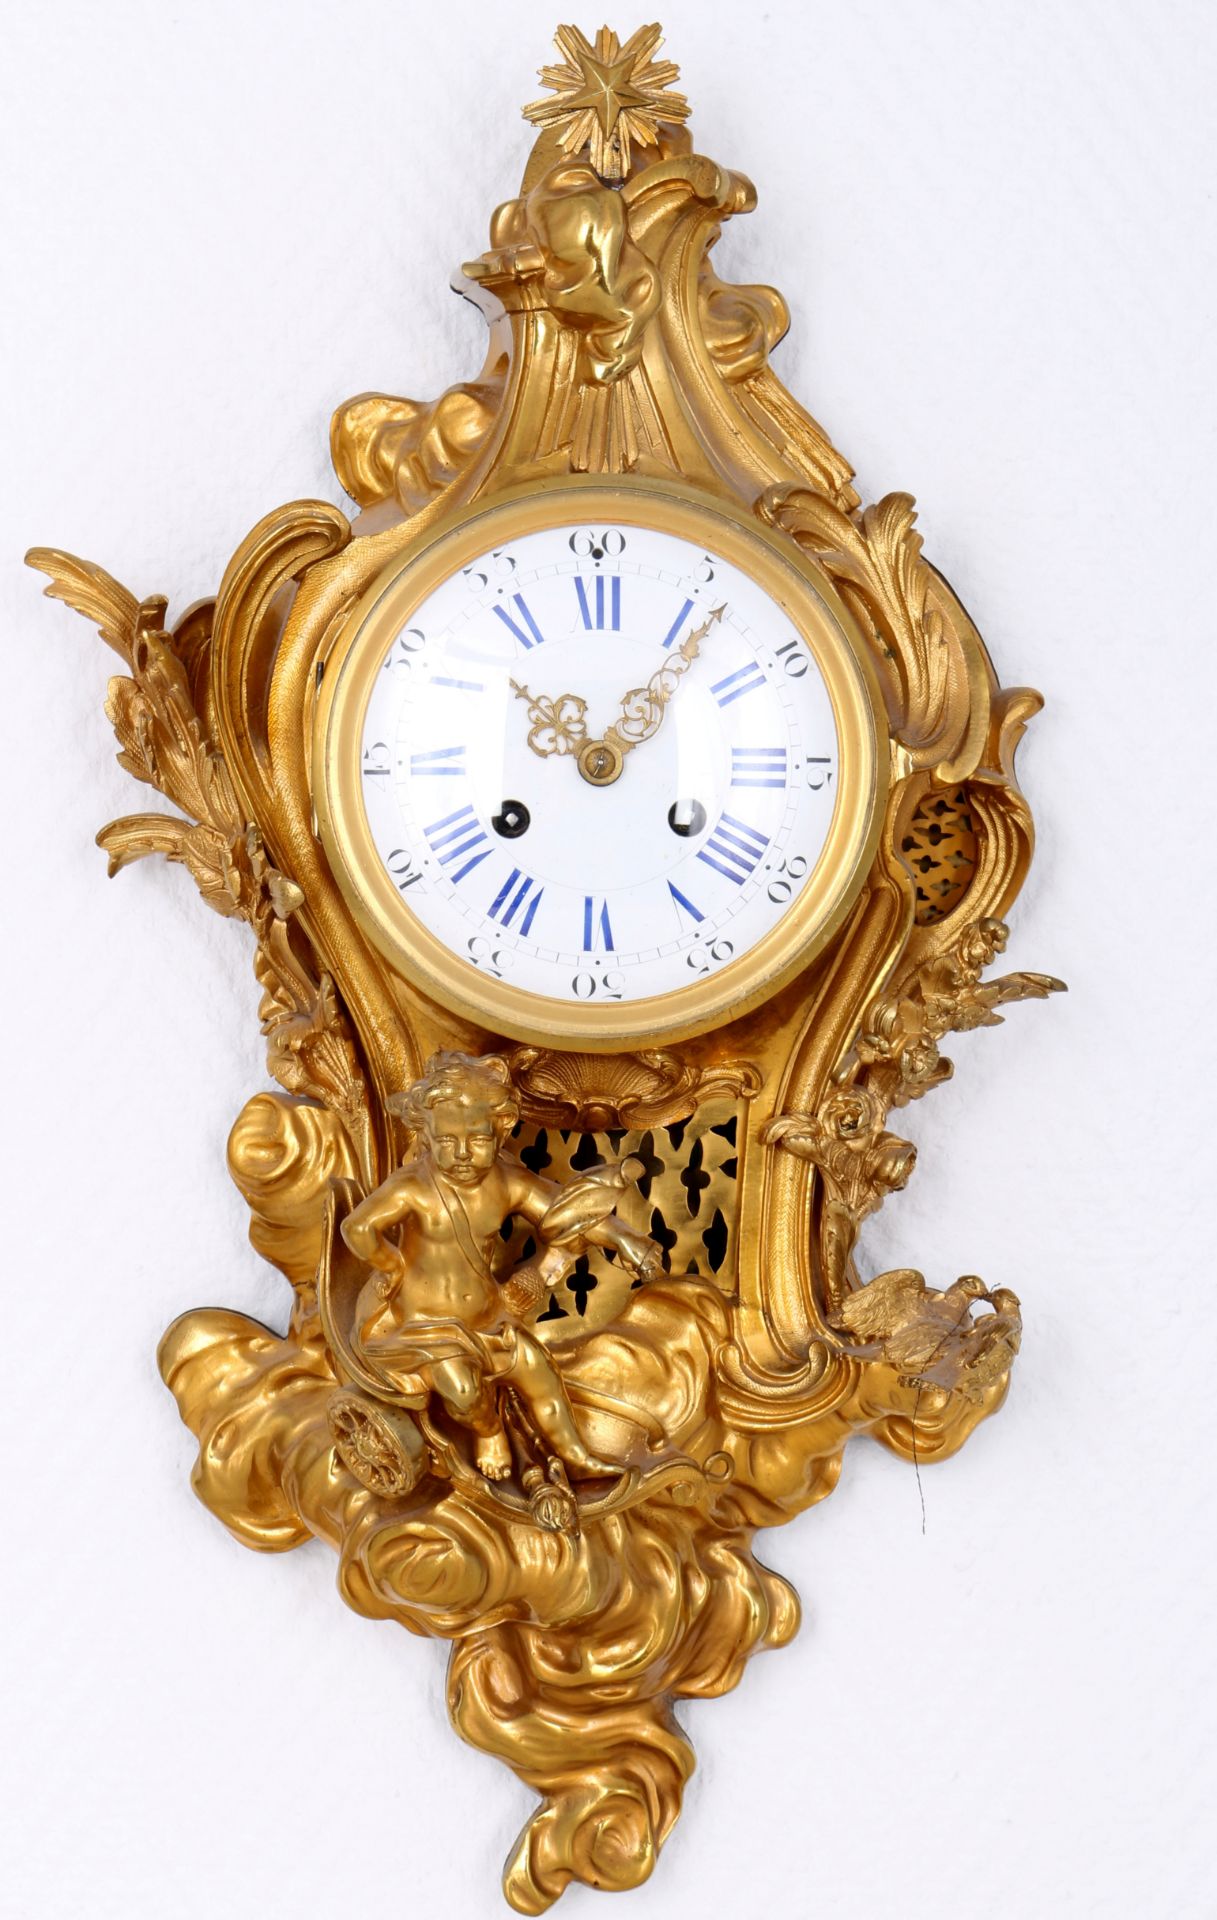 Cartel clock in Louis XVI style, France, Carteluhr im Louis XVI-Stil, Frankreich